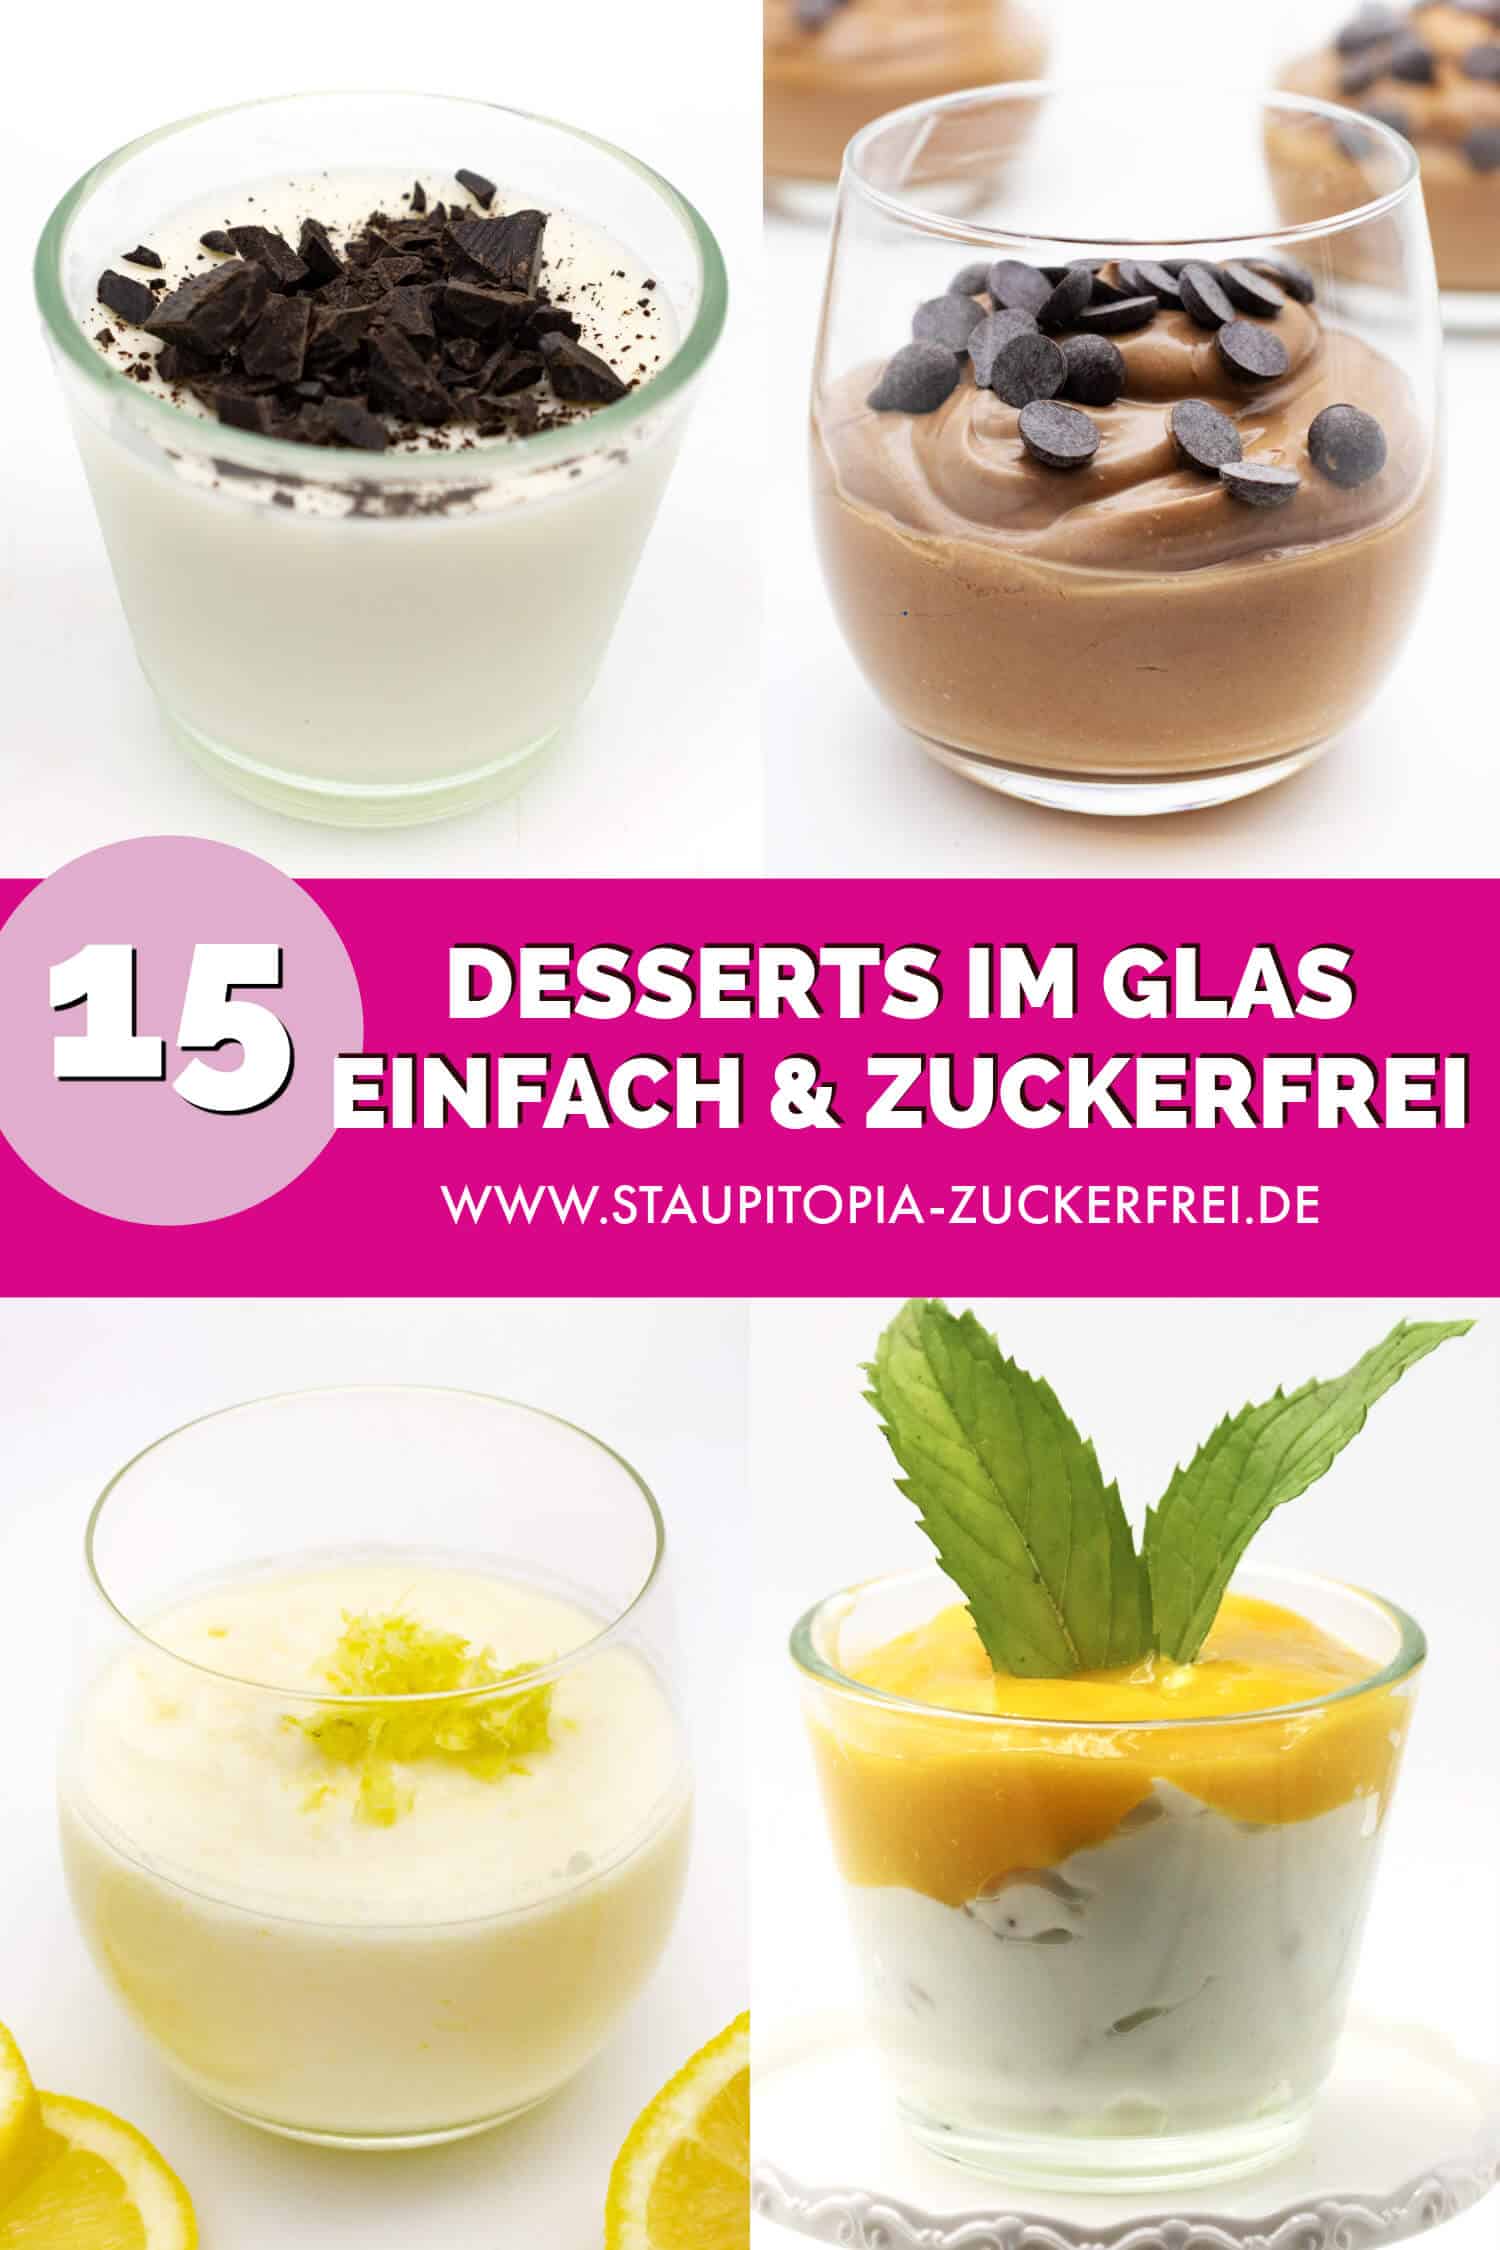 Schnelle Desserts im Glas ohne Zucker selber machen